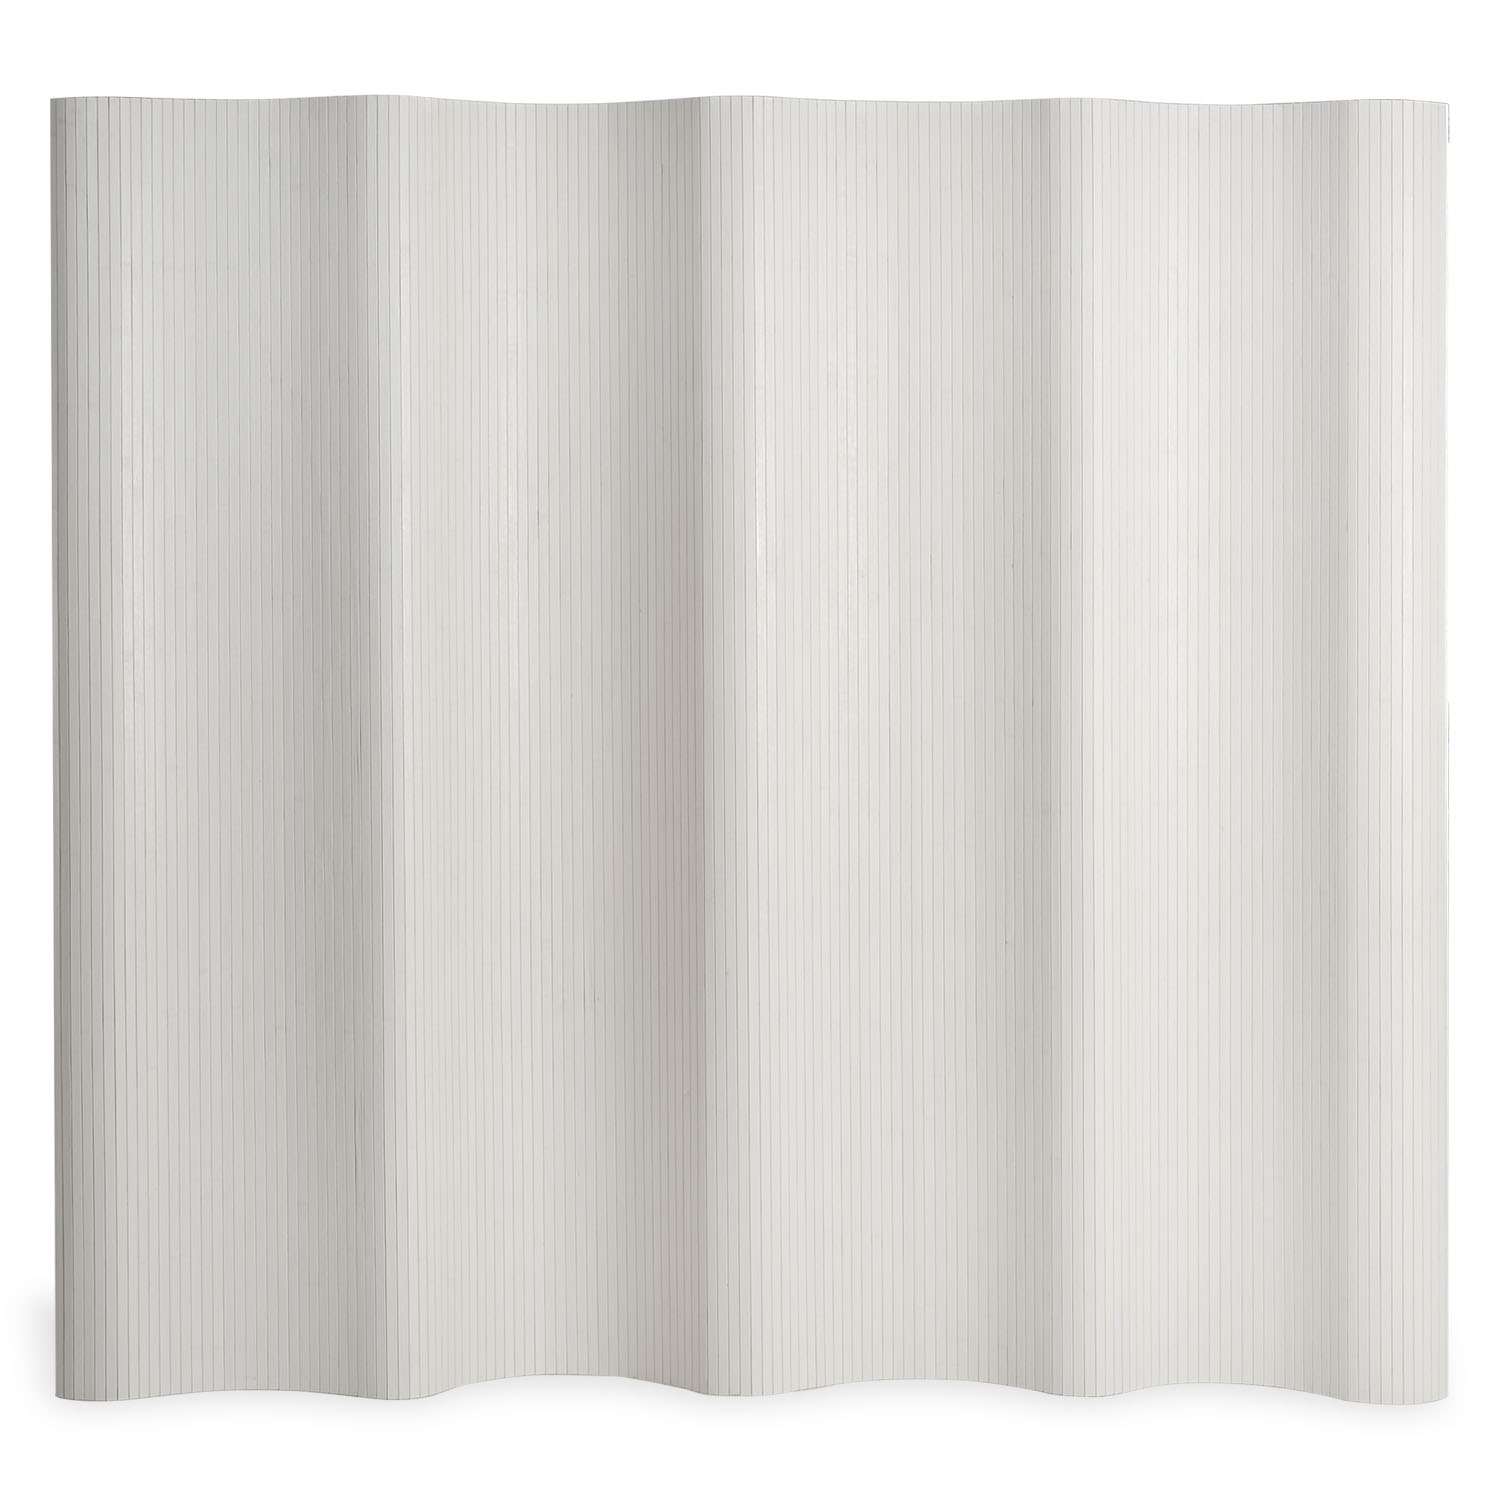 Paravent Raumteiler Trennwand Bambus  200 x 250 cm Sichtschutz Spanische Wand White Washed